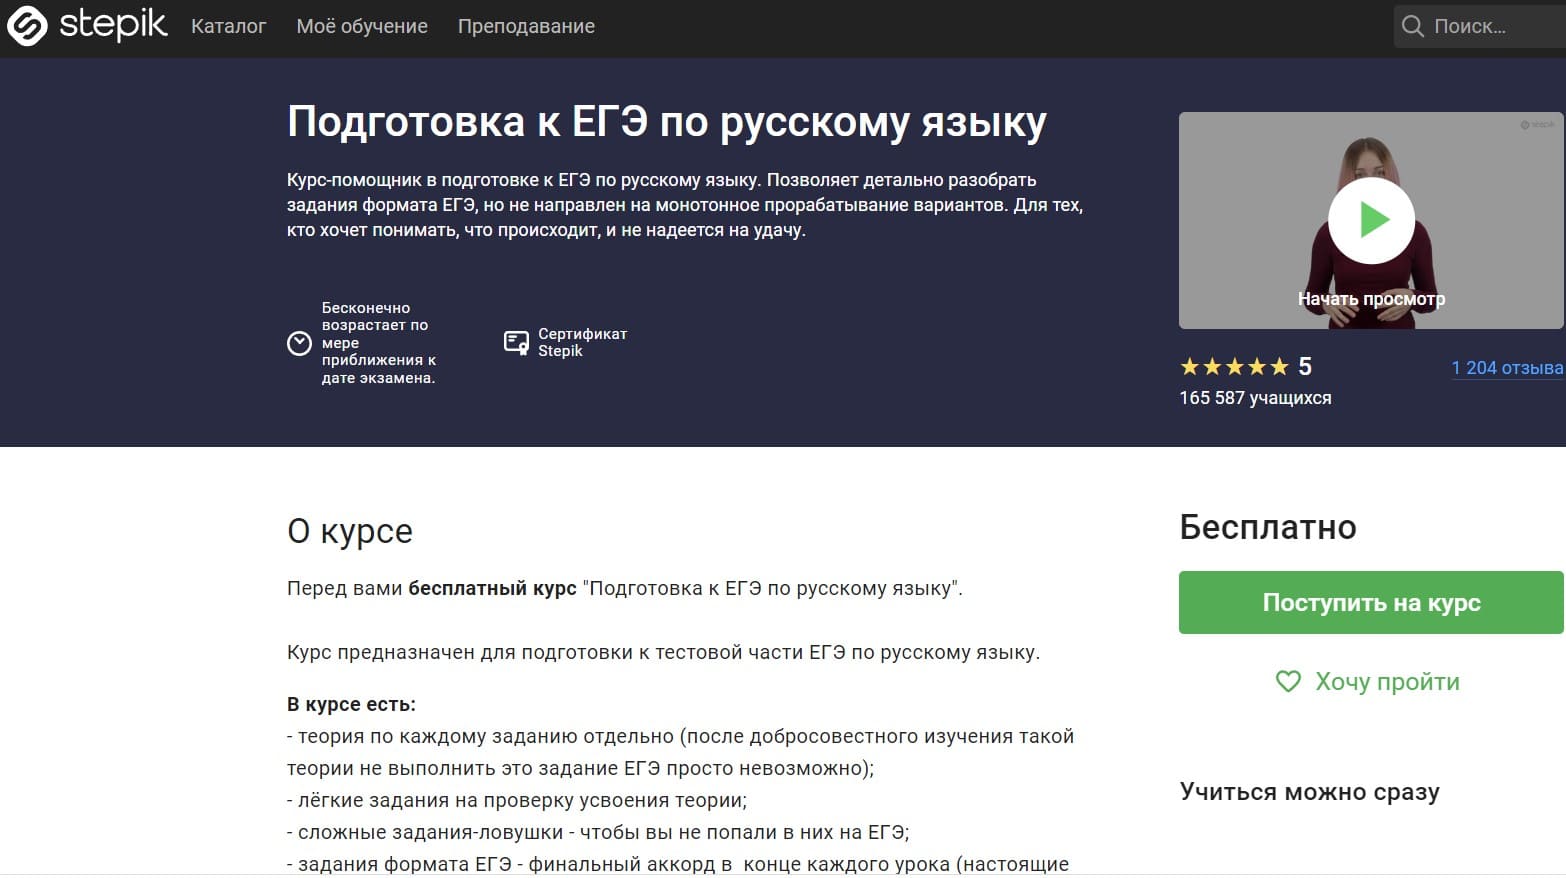 Бесплатный курс для подготовки к ЕГЭ по русскому языку